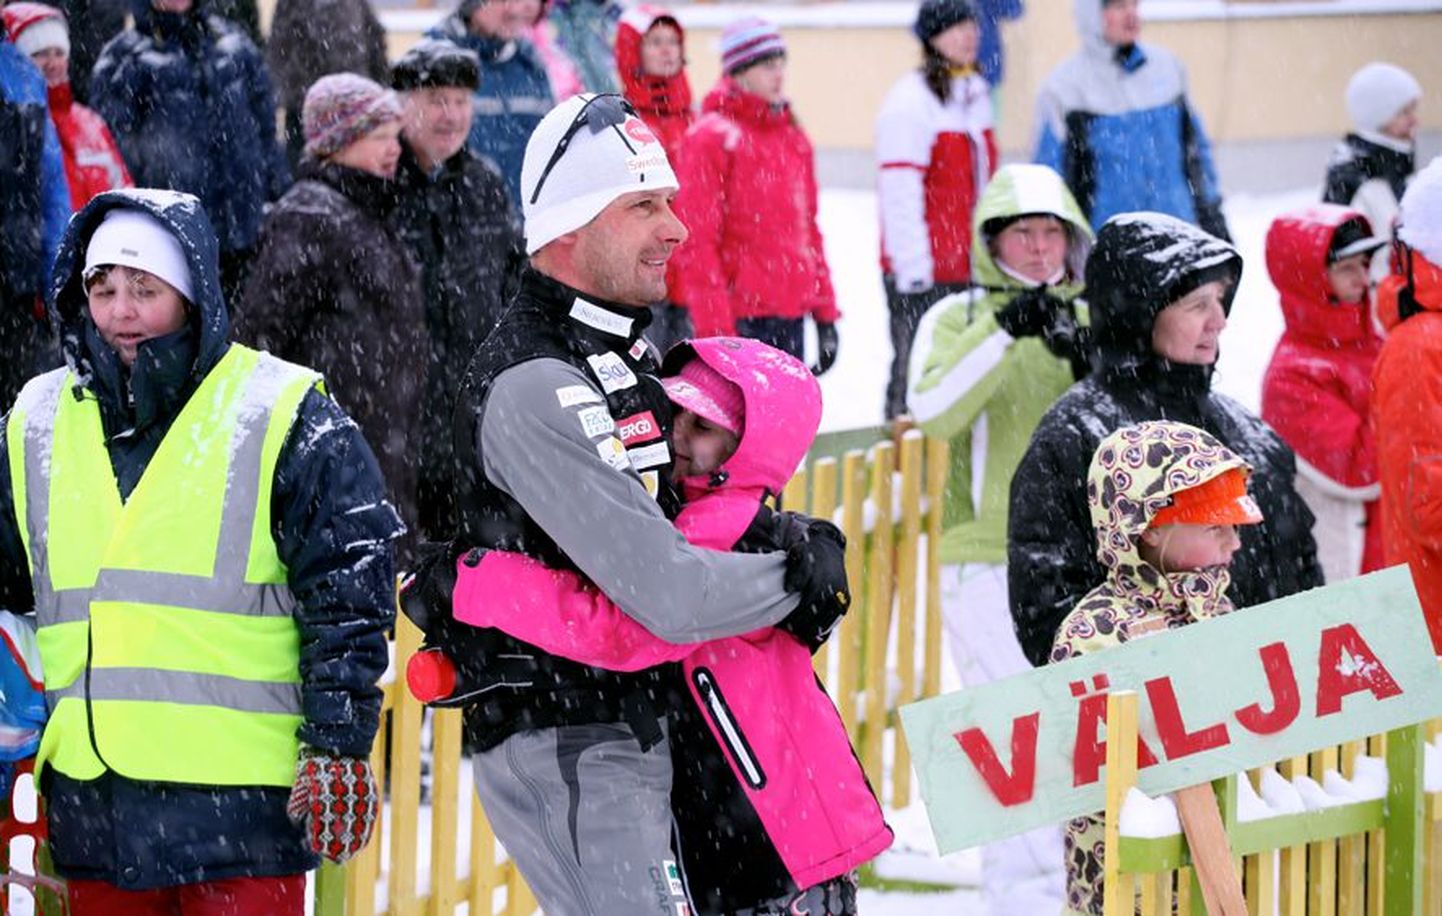 Aasta tagasi 15 km sõidus oli kullamehe Jaak Mae esimeseks õnnitlejaks tütar. Tänavu alustas Mae Eesti meistrivõistlusi hõbedaselt.